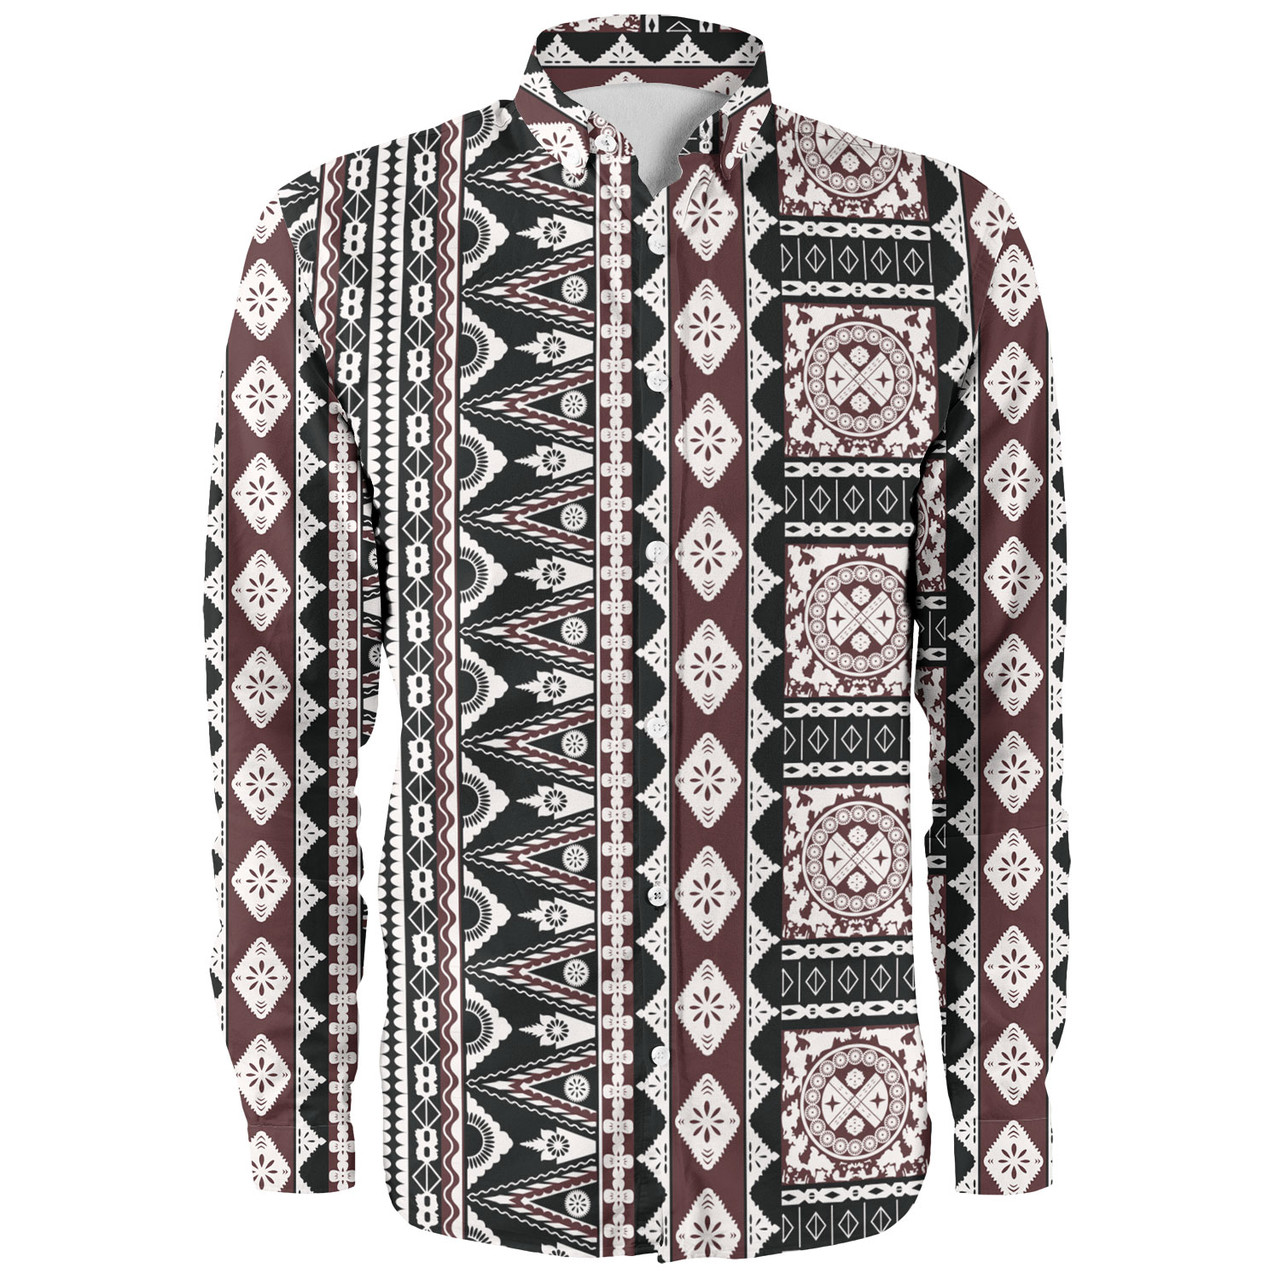 Fiji Long Sleeve Shirt Bula Fiji Masi Motif Brown Color Design